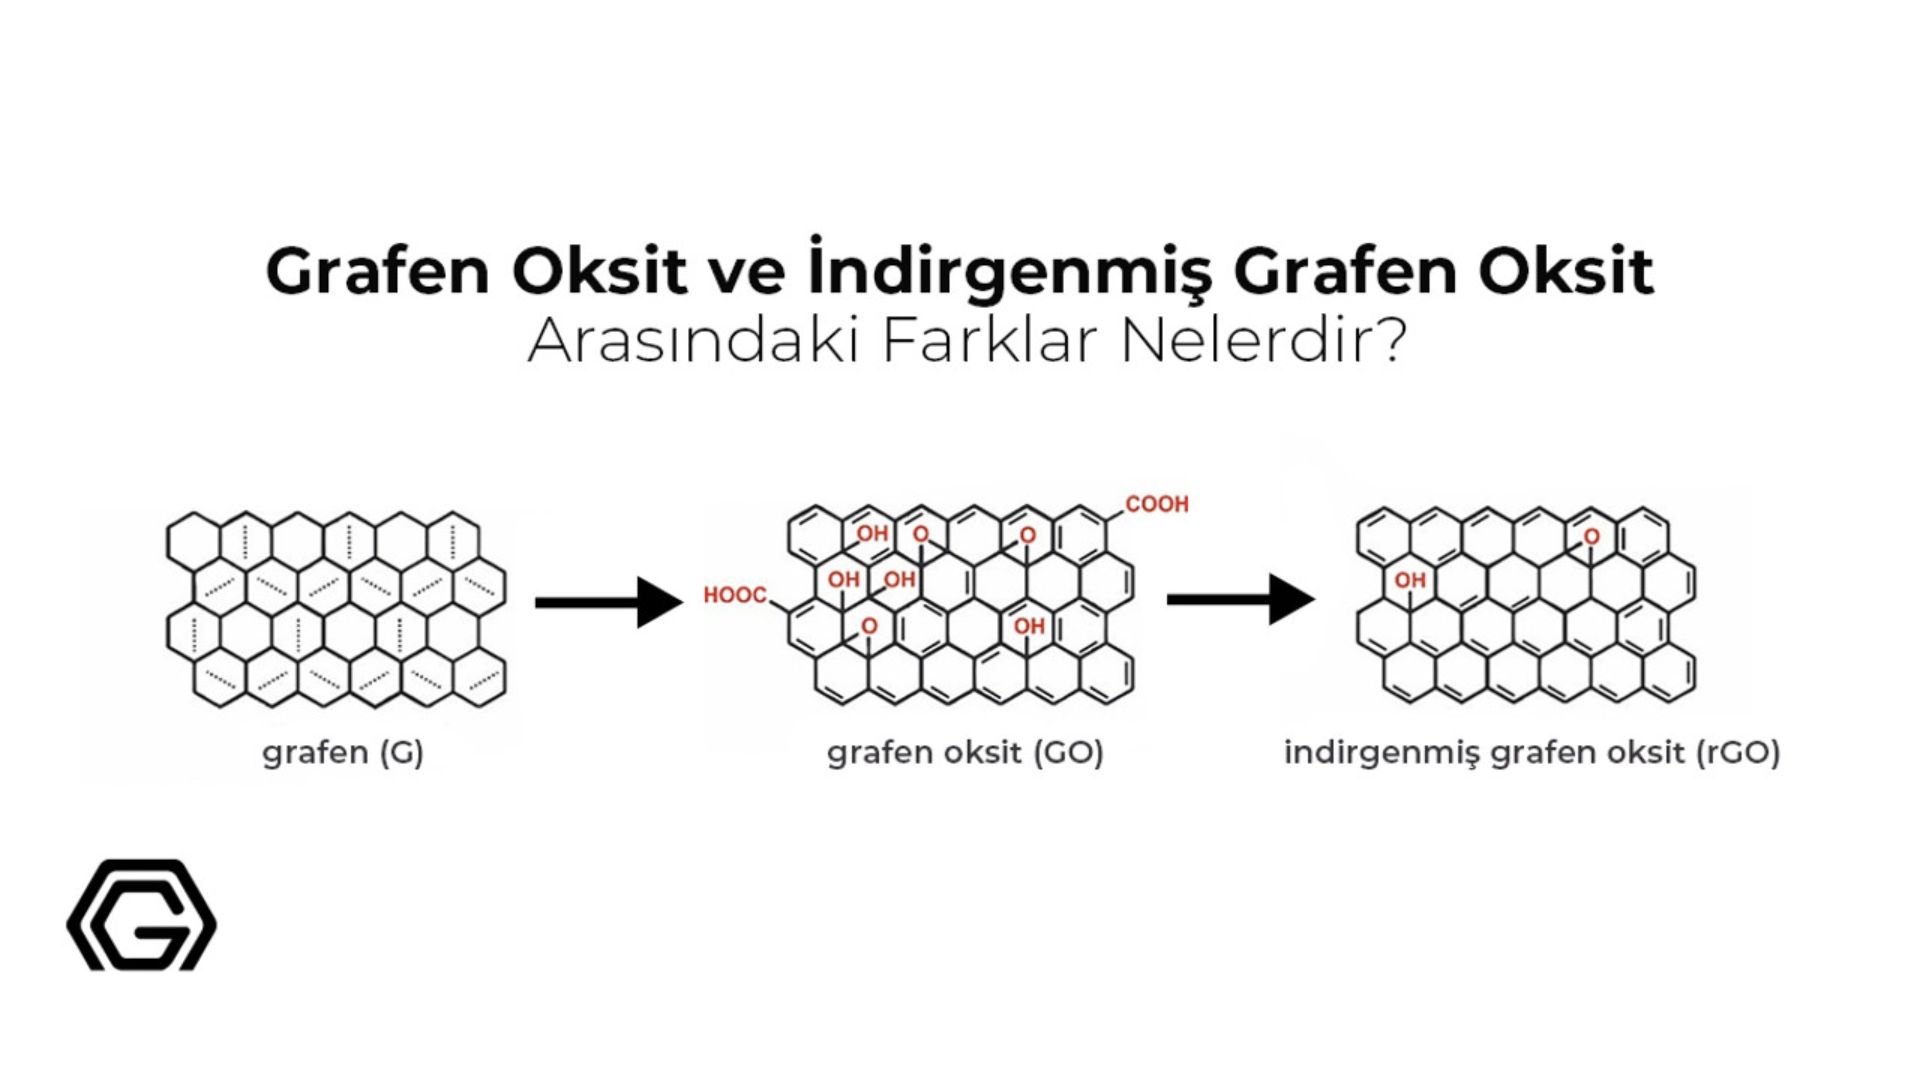 Grafen Oksit ve İndirgenmiş Grafen Oksit Arasındaki Farkları Keşfet